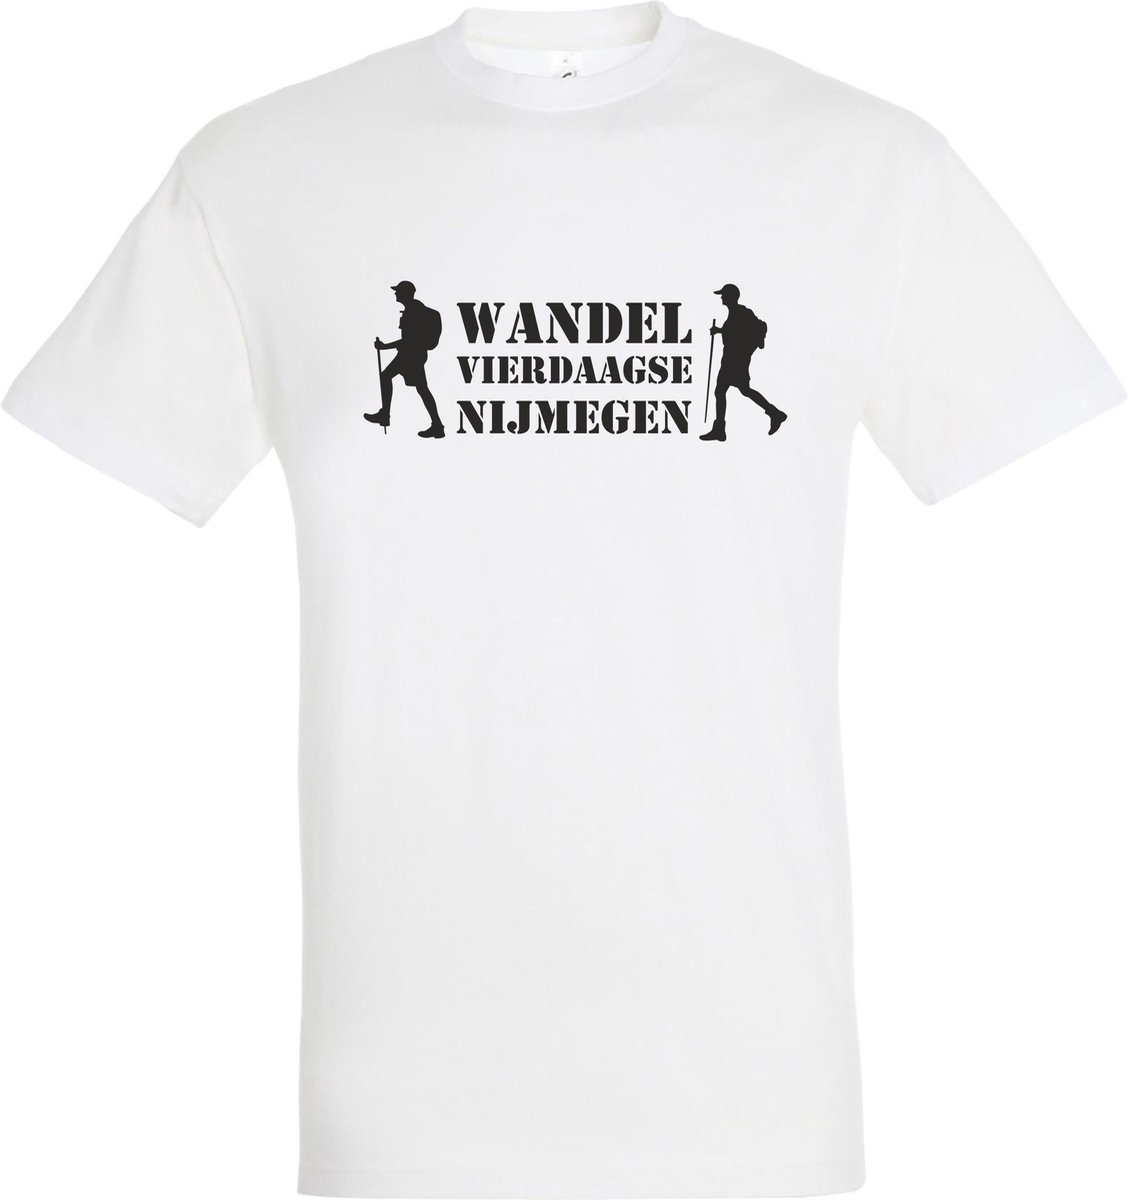 T-shirt Wandel vierdaagse Nijmegen met wandelaars |Wandelvierdaagse | vierdaagse Nijmegen | Roze woensdag | Wit | maat XS